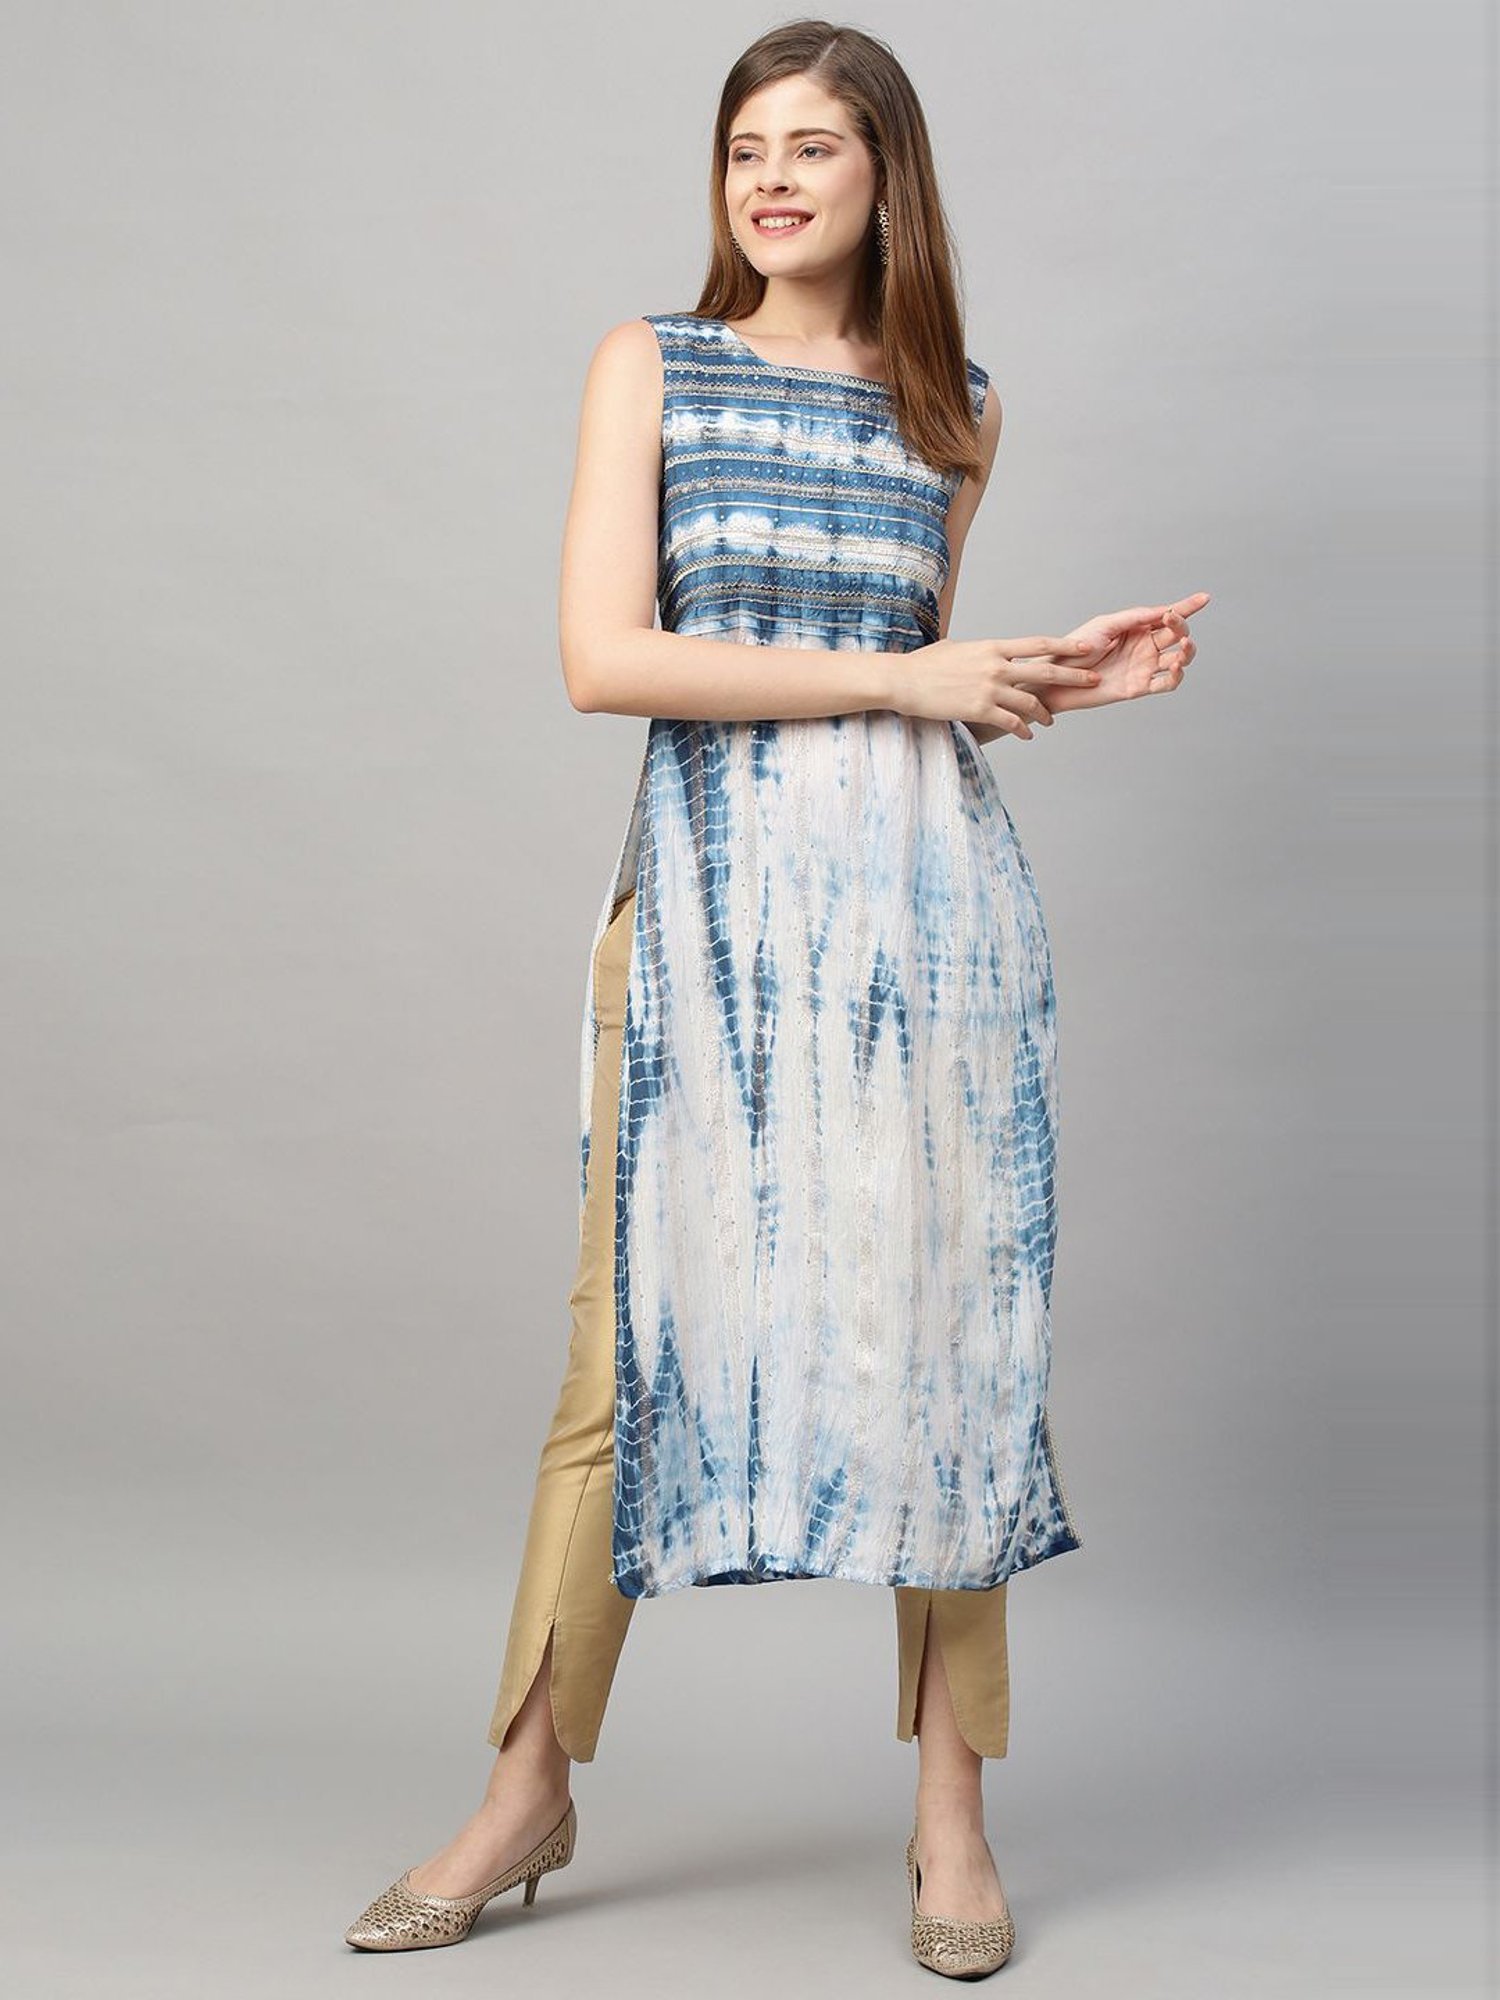 Latest Kurtis Collection | Baby girl dress patterns, Cotton kurtis online,  Girl dress patterns